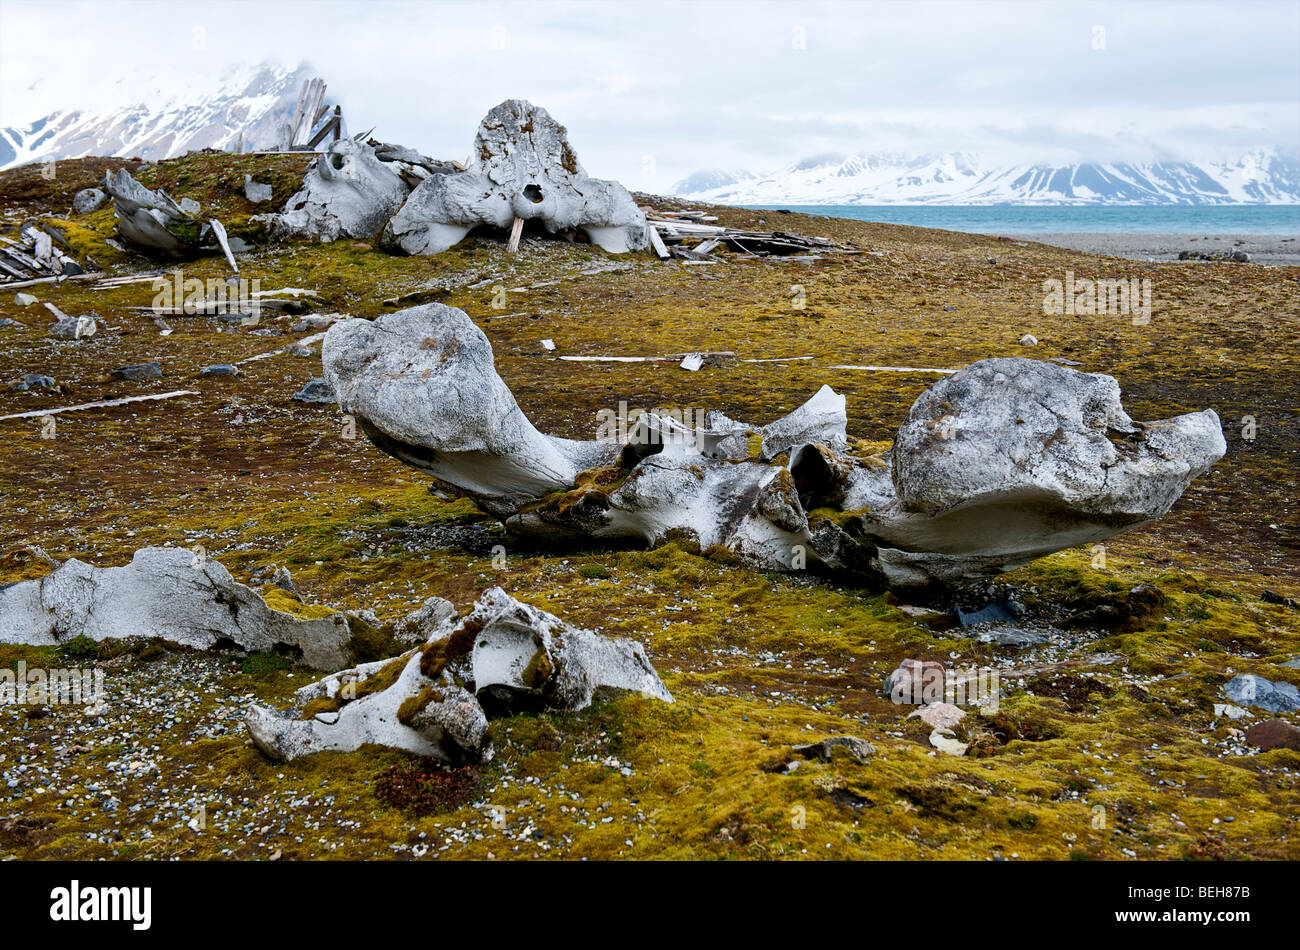 Spitsbergen, Svalbard, Hornsund, bones of sperm whale Stock Photo